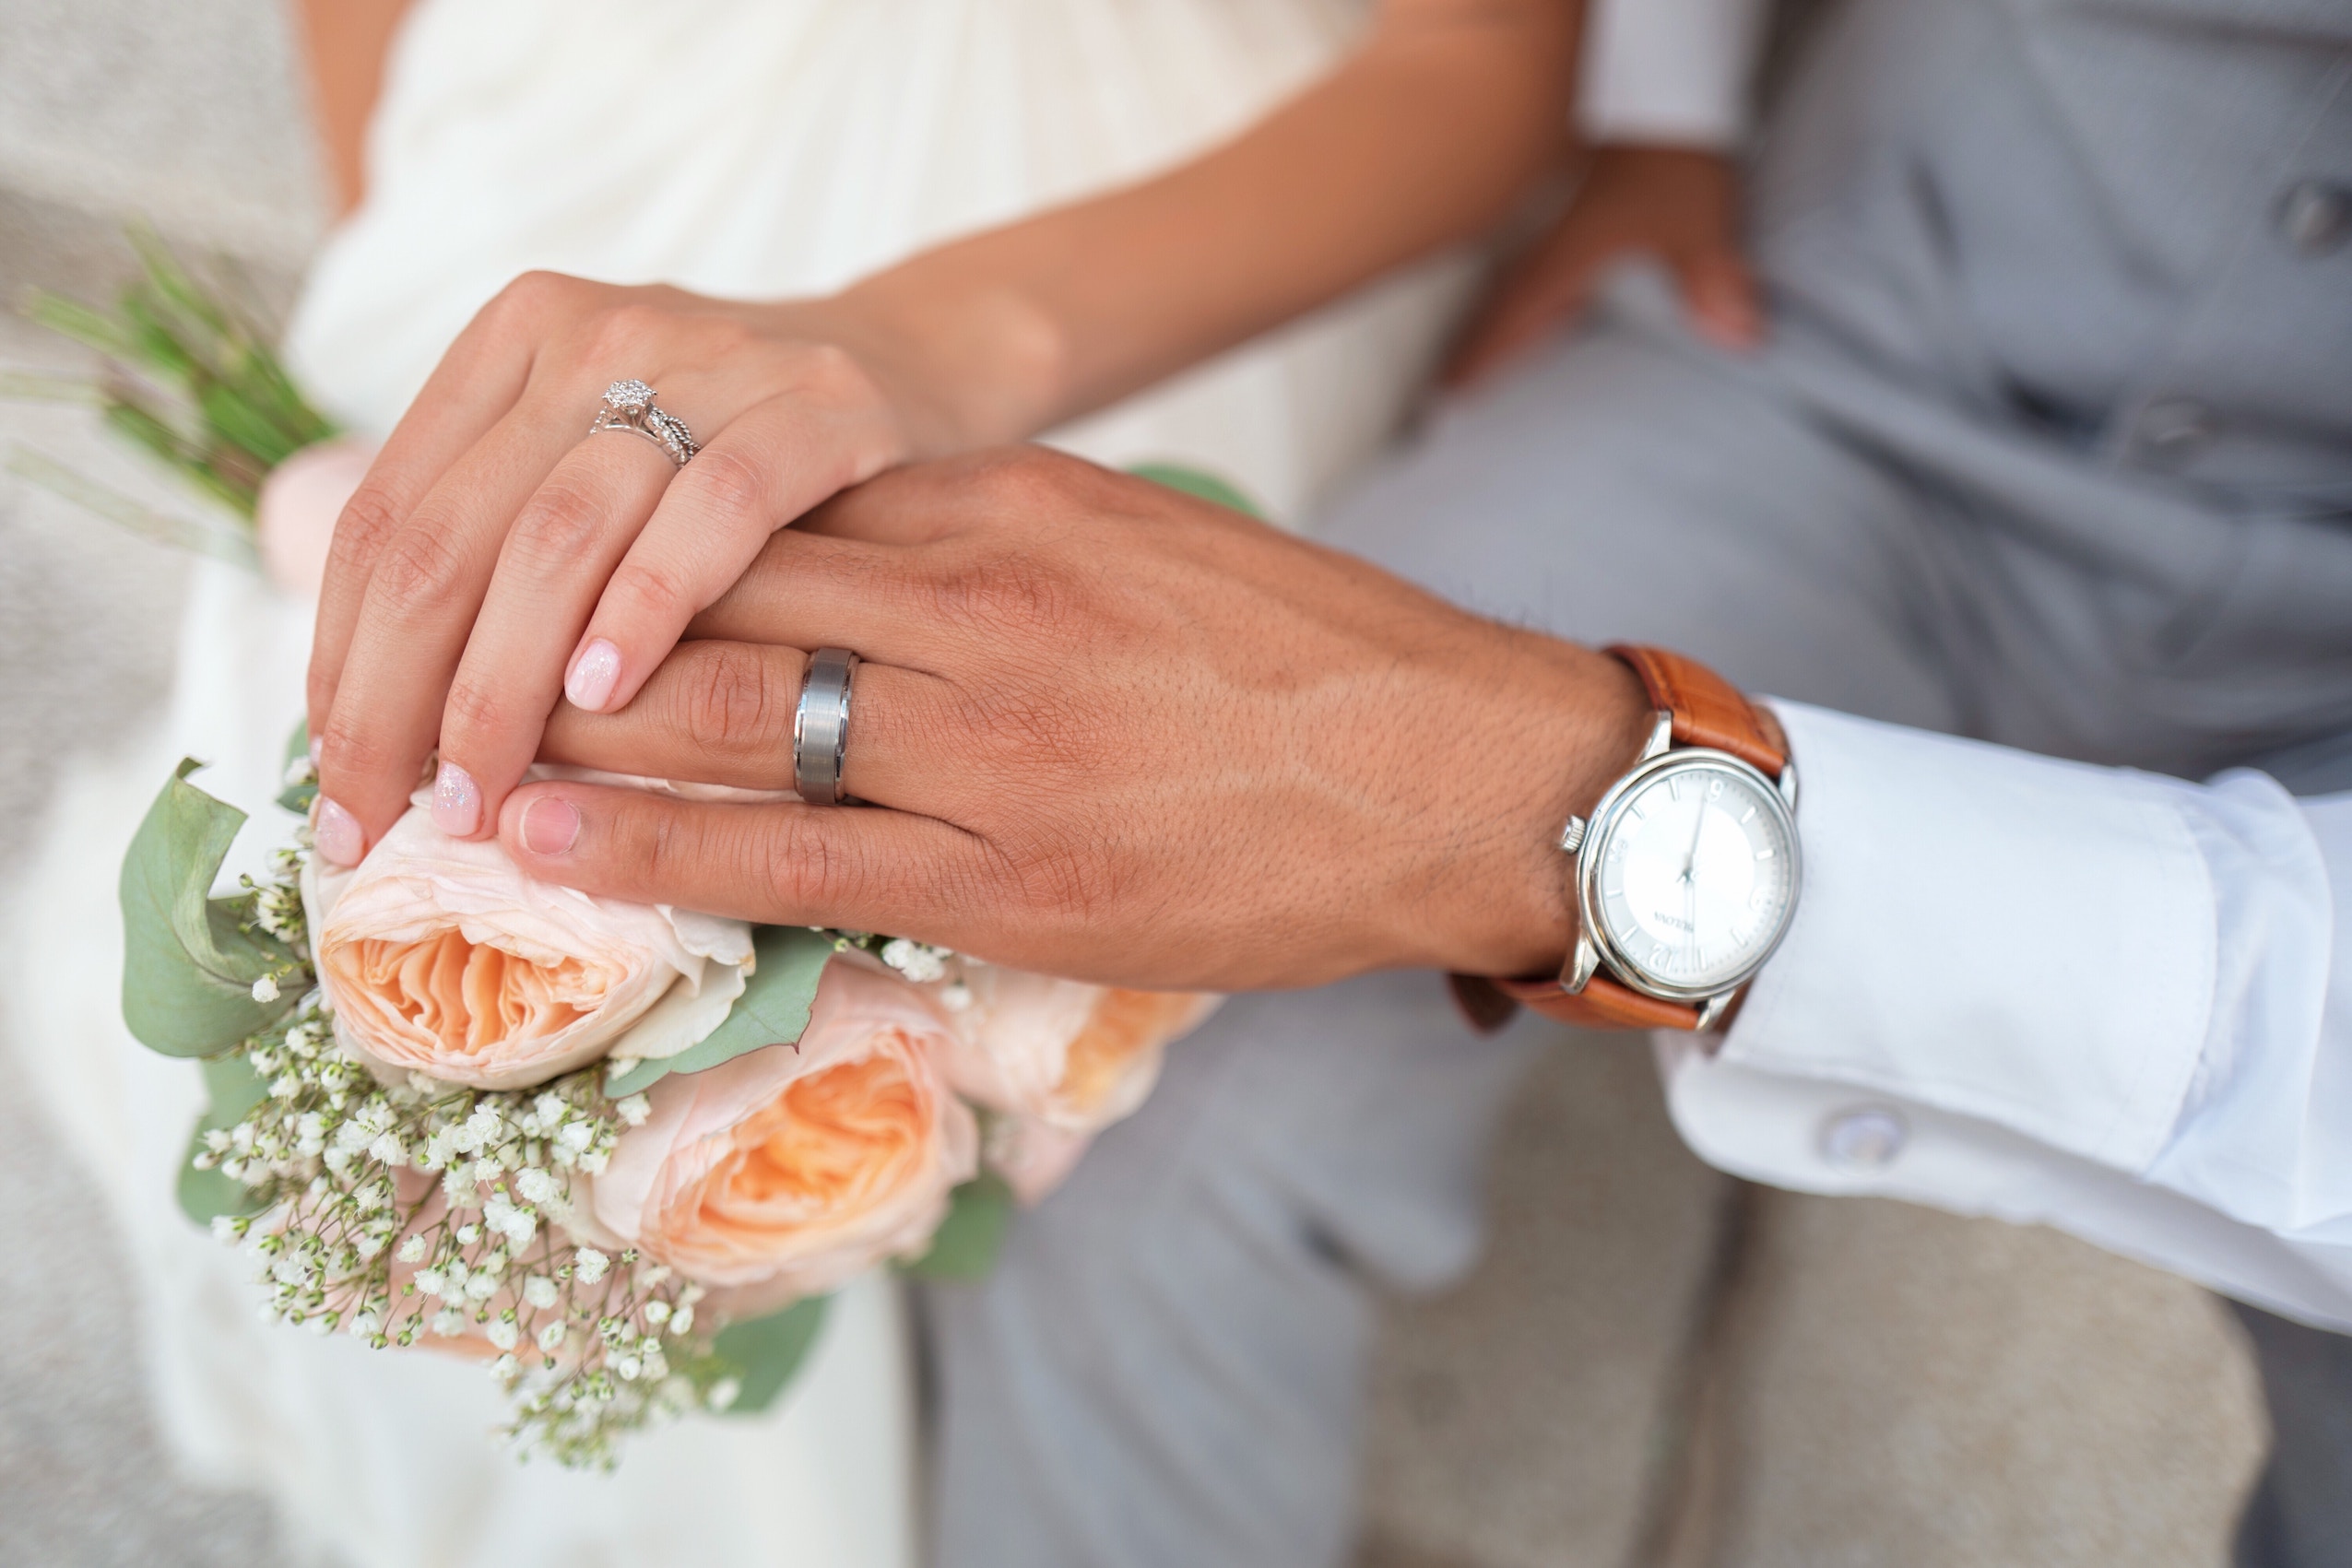 Romantische-Hochzeitsfotografie-Hochzeitsring-an-den-Händen-des-Brautpaares